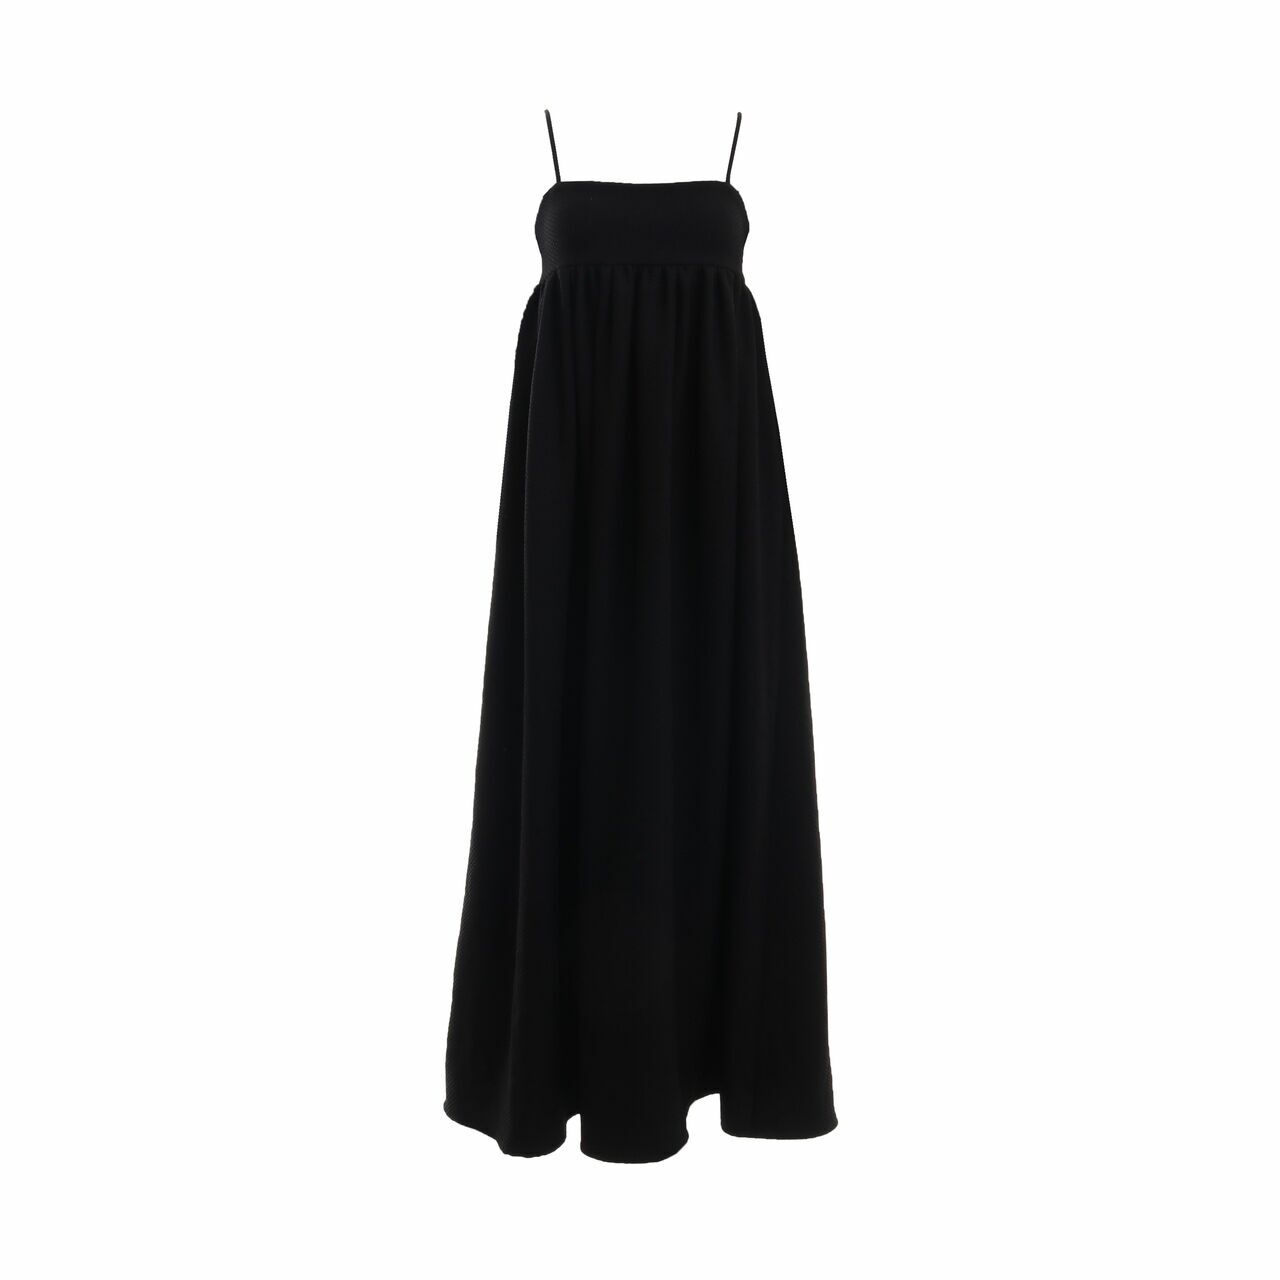 Duo Awan Studios Black Long Dress